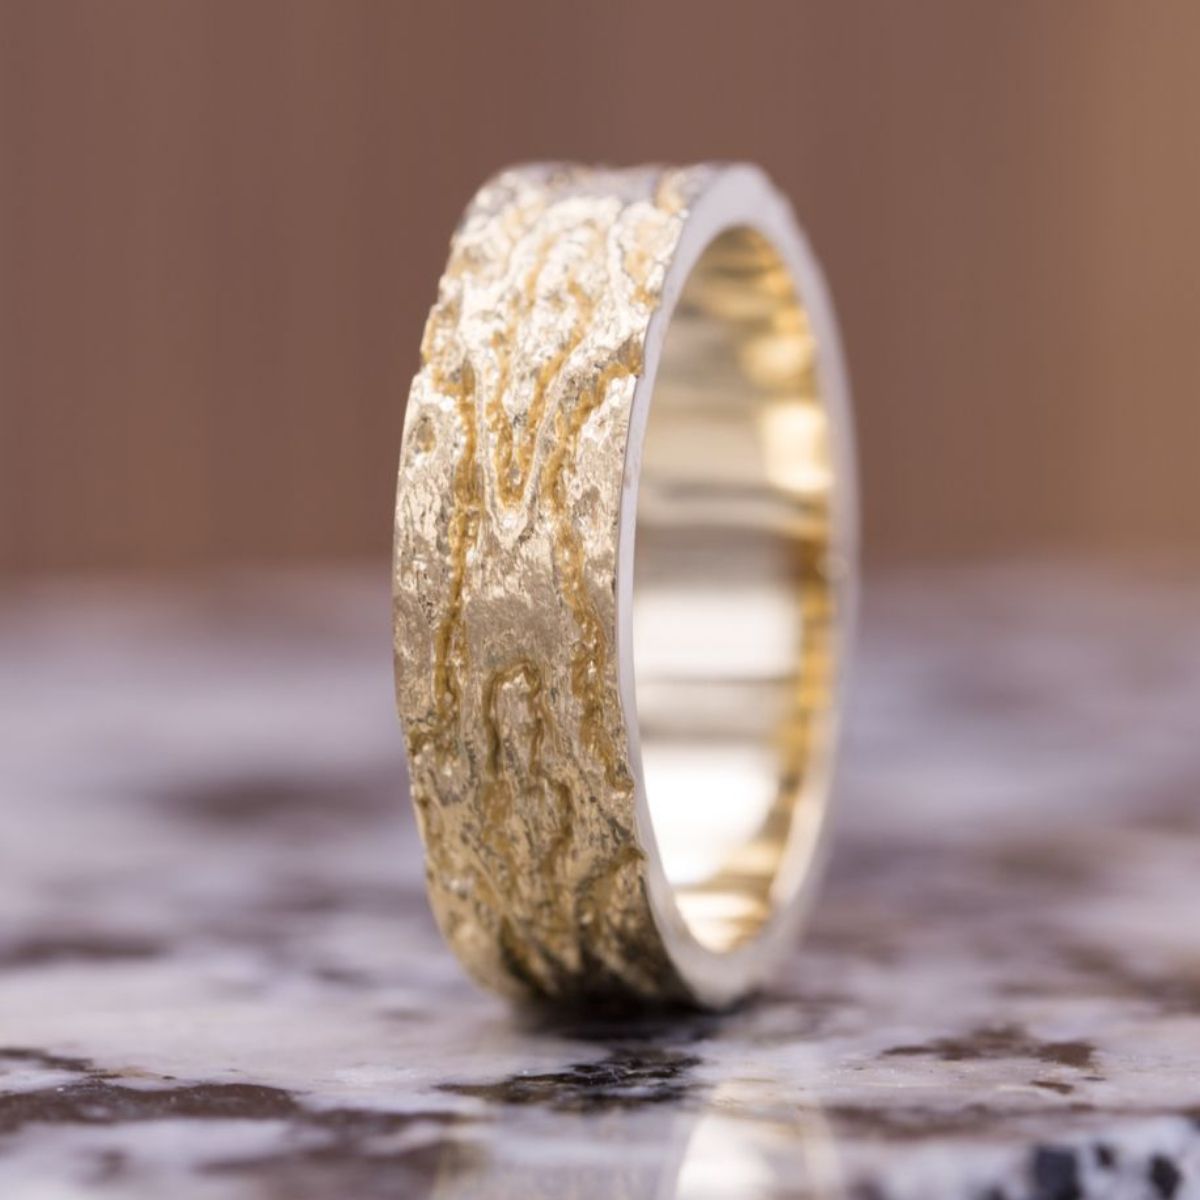 Custom Men's Rings | Design Your Own Men's Ring | CustomMade.com